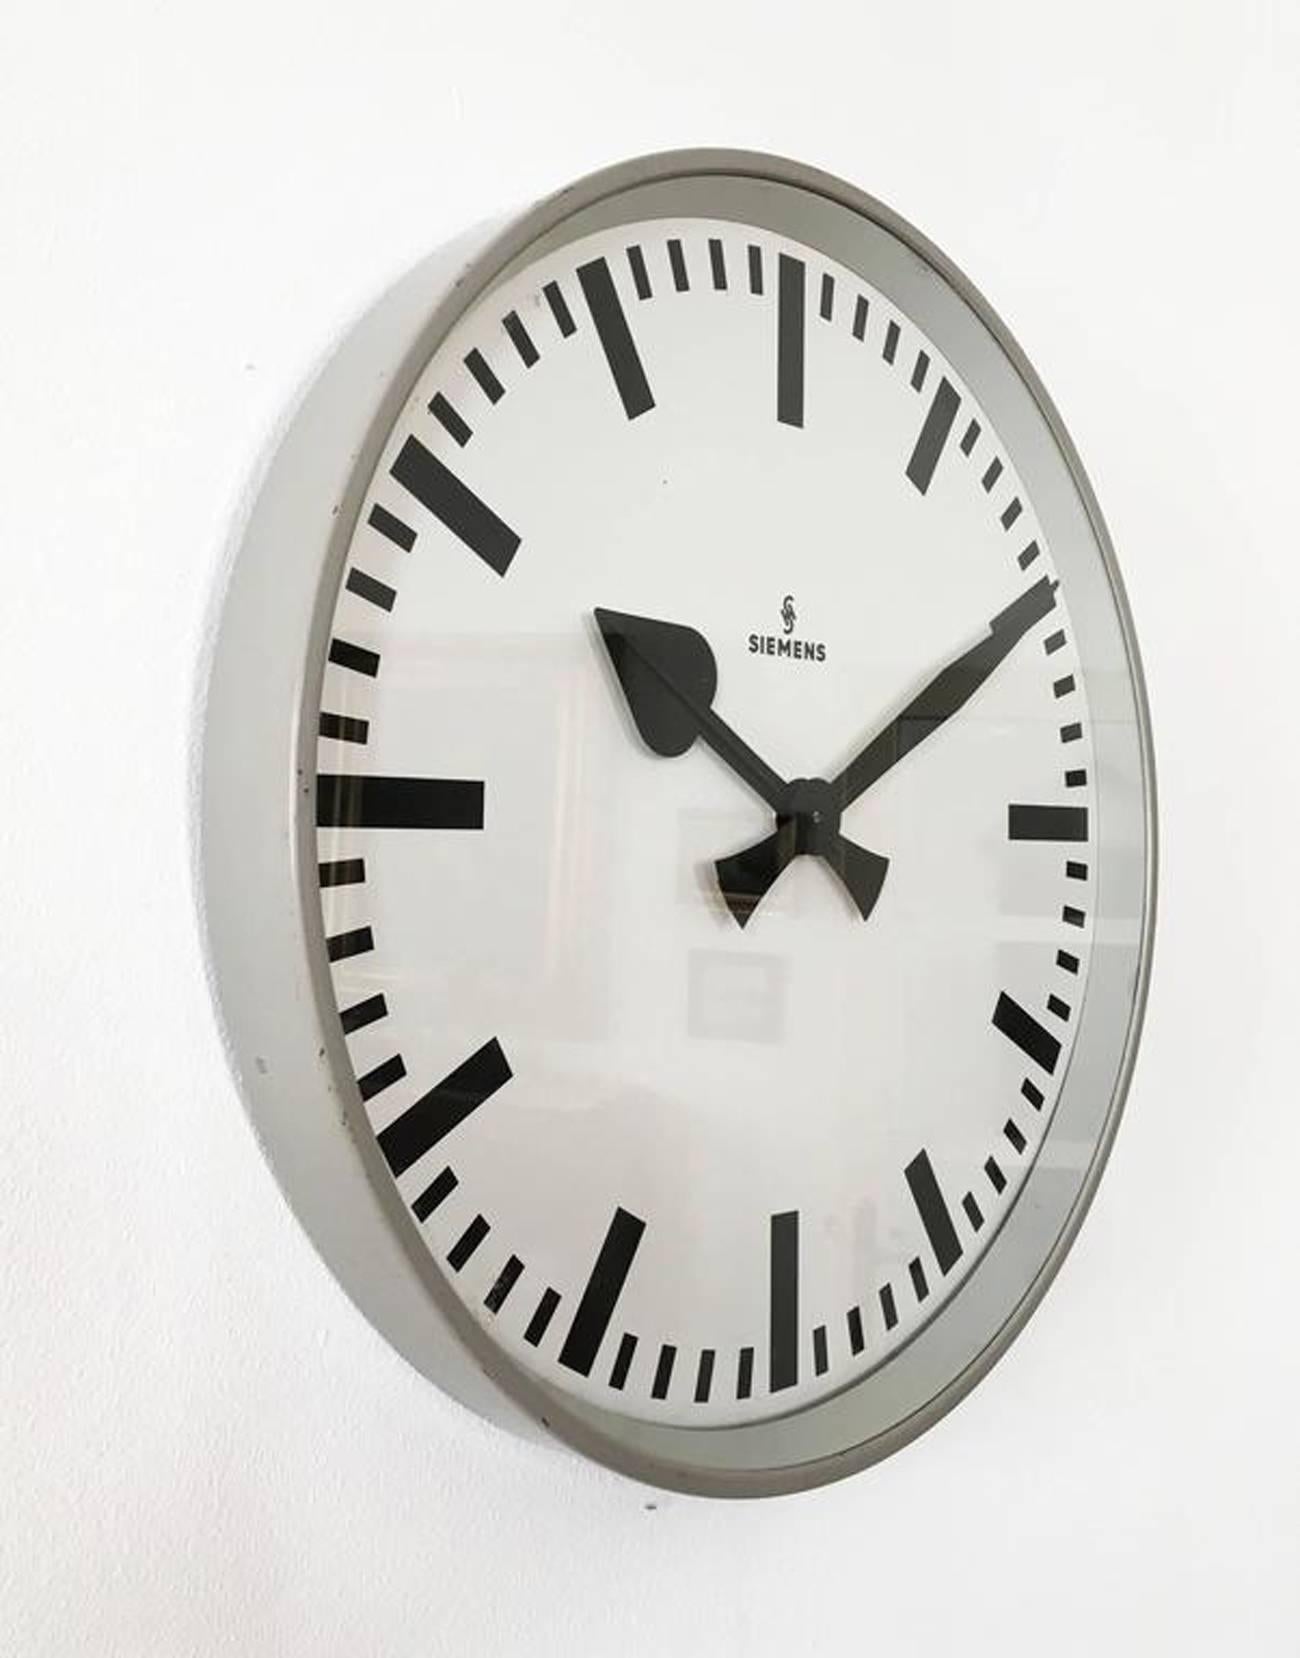 German Large Siemens Factory or Workshop Wall Clock